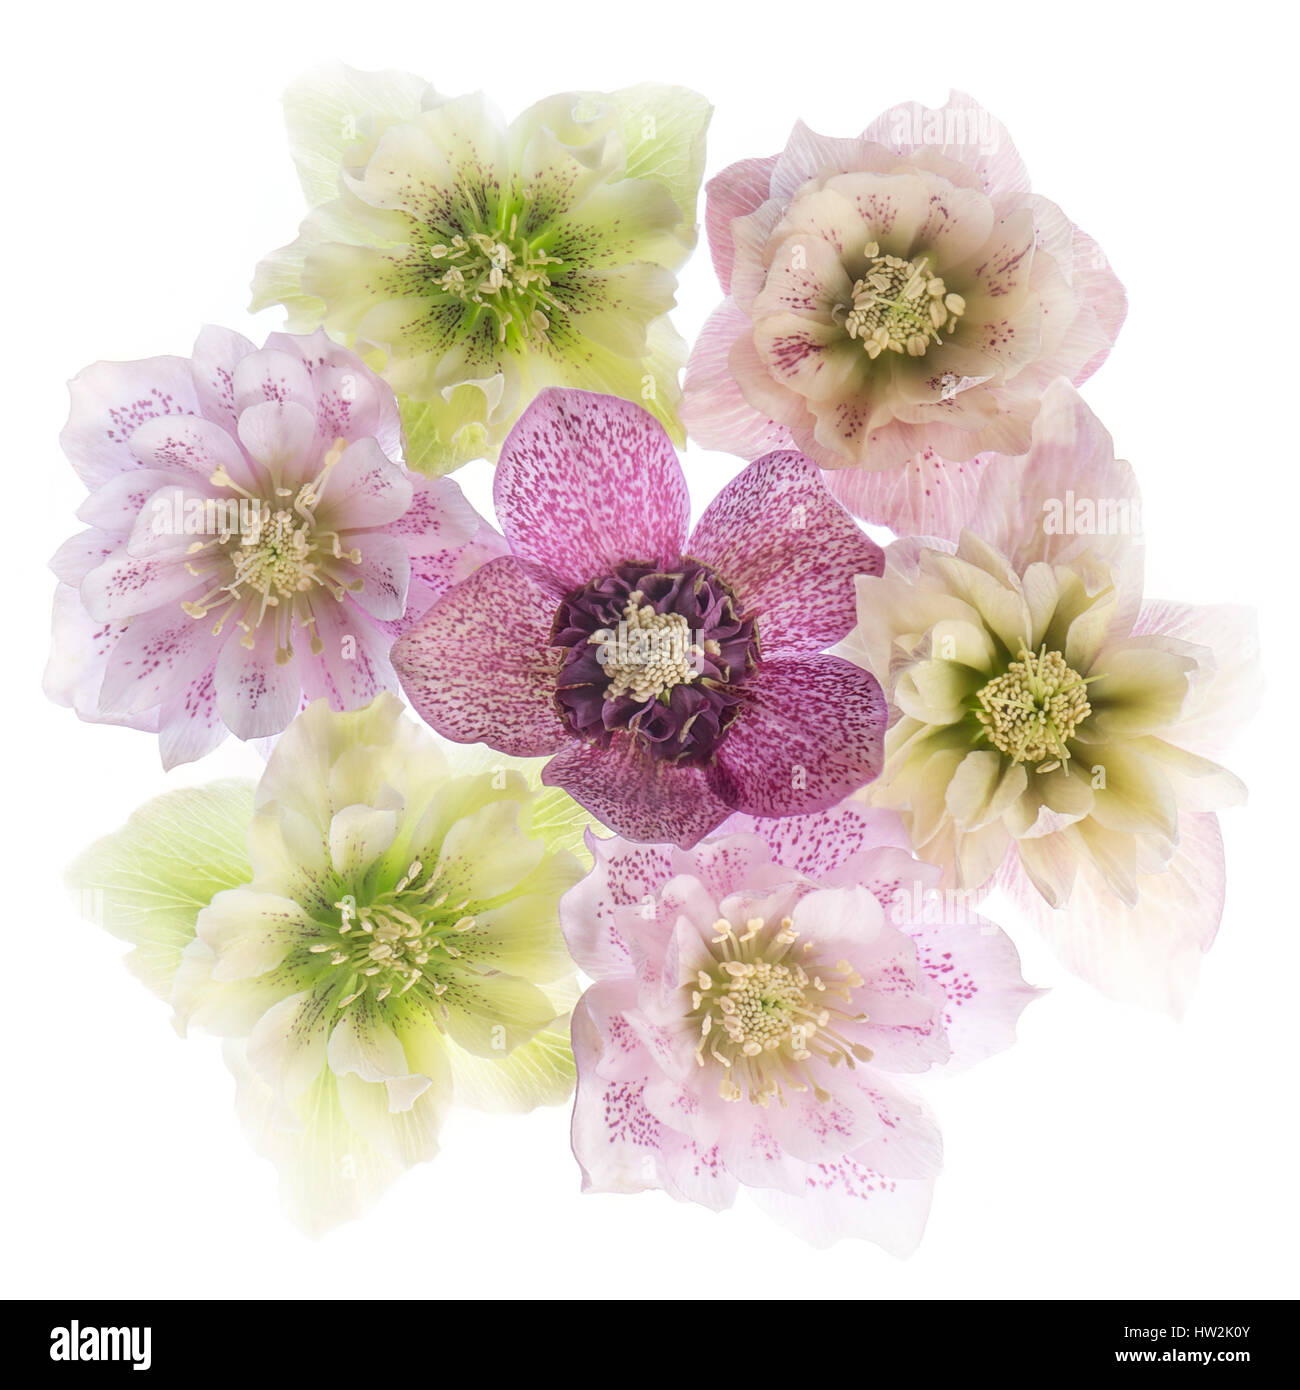 Ein High-Key, Studio Bild der zarten und bunten Nieswurz Blumen auch bekannt als Fastenzeit Rosen gegen einen weißen Hintergrund. Stockfoto